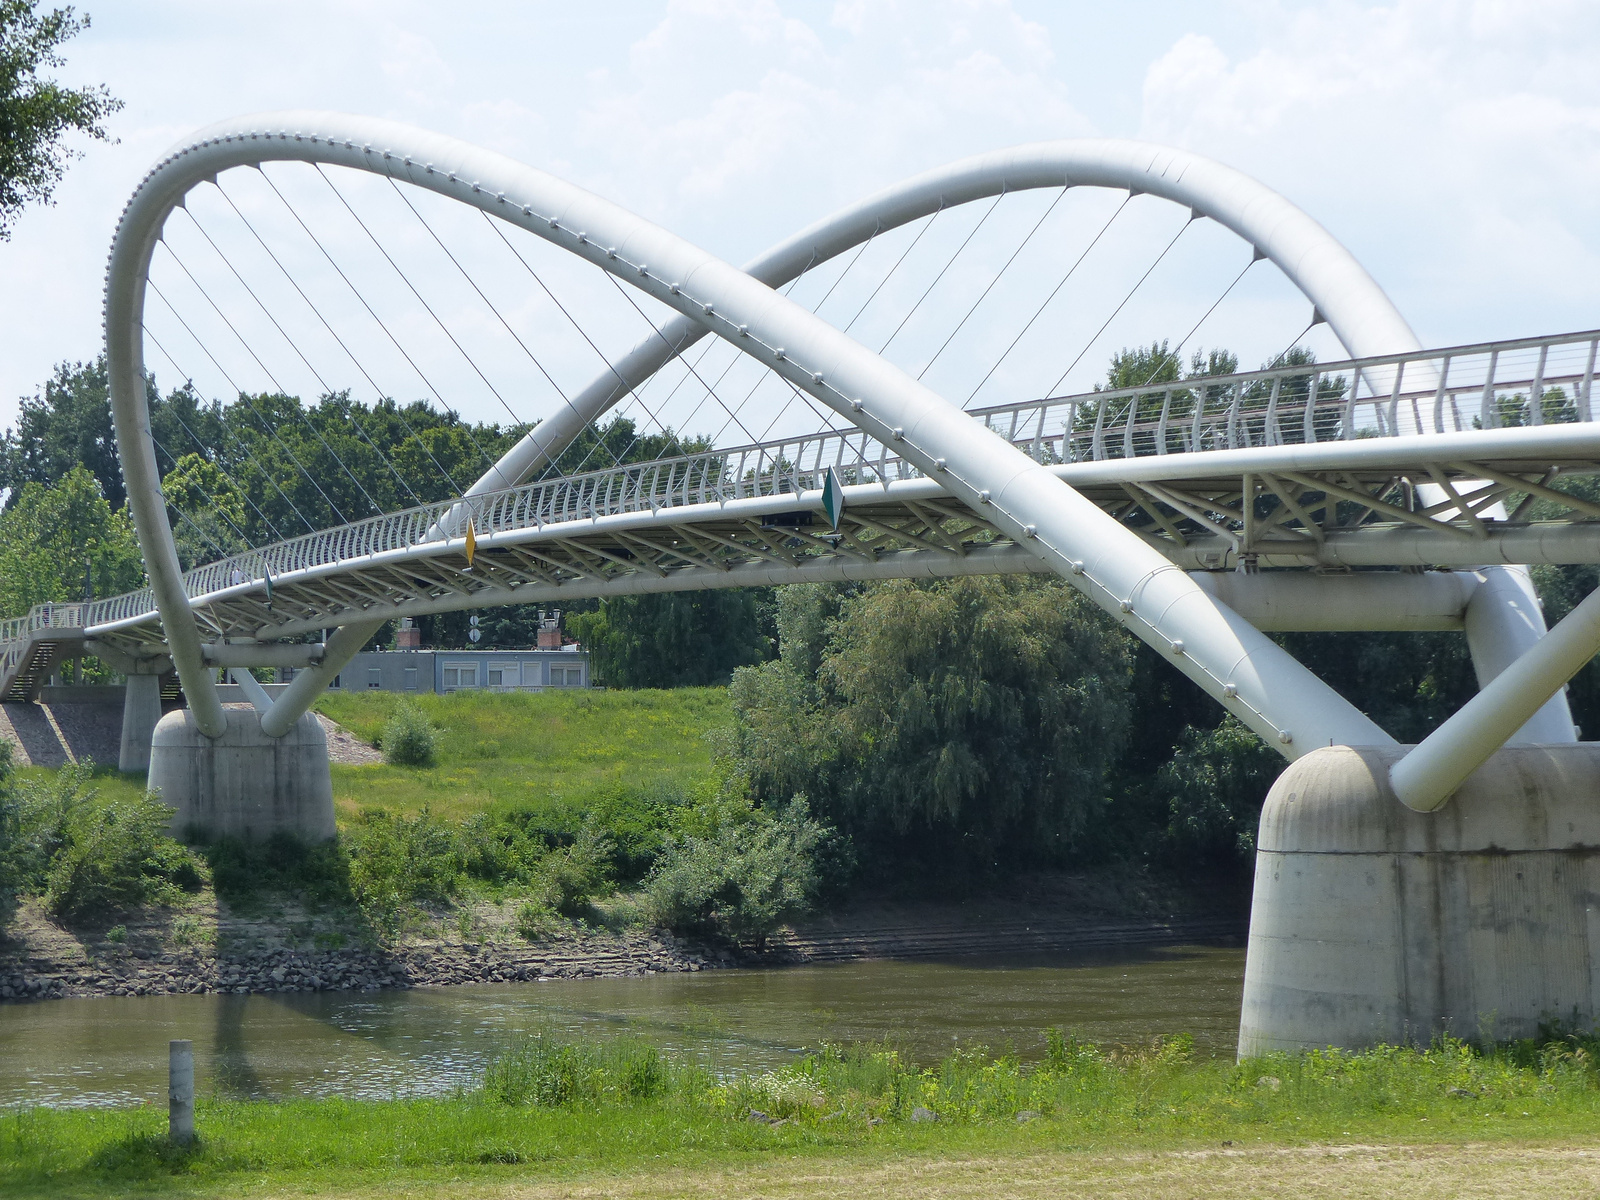 A szolnoki Tiszavirág híd a gyalogosok és a kerékpárosok előtt is nyitva áll, impozáns látványa pedig még szebbé teszi a város főterét.